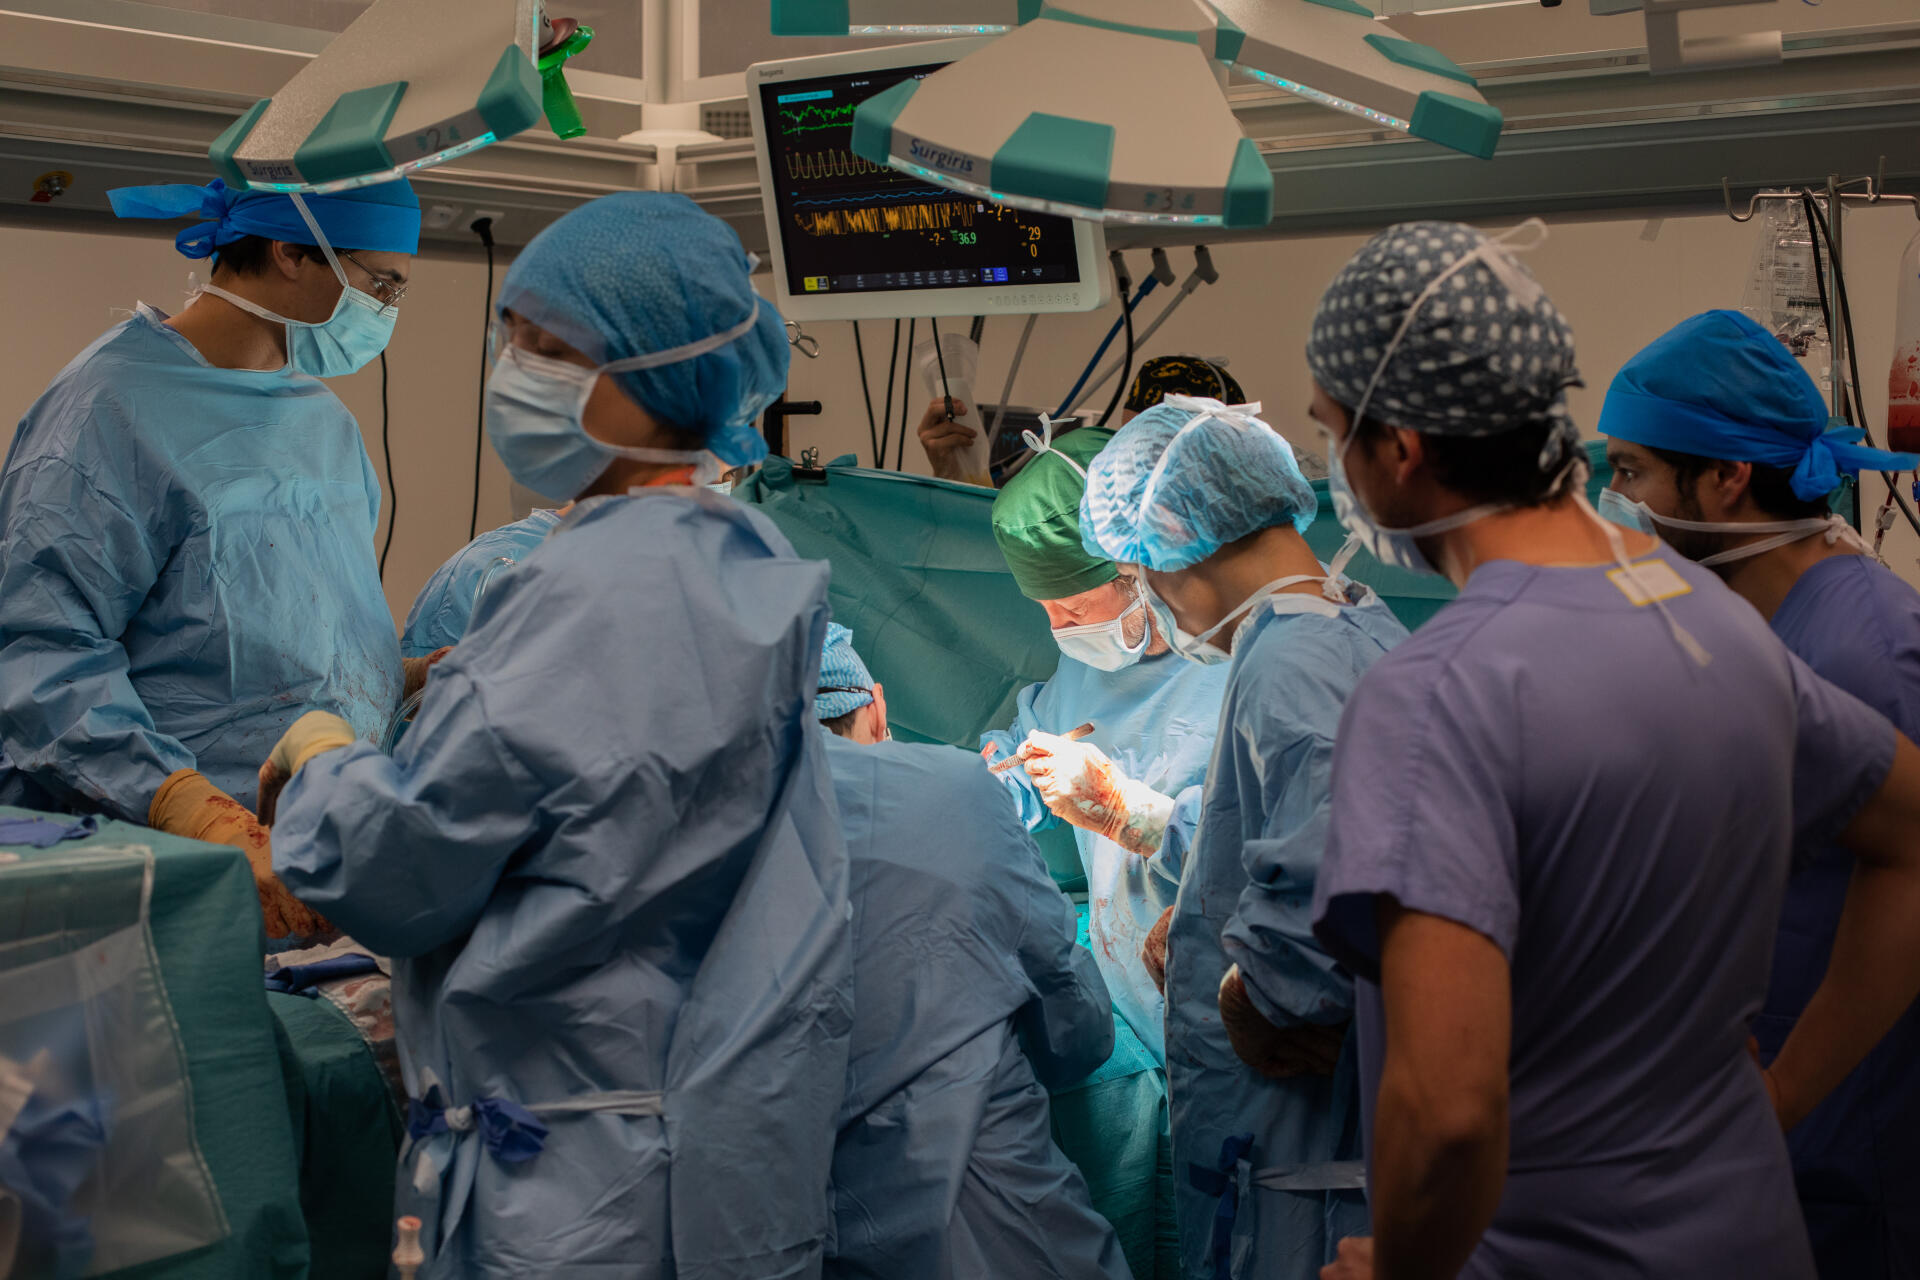 Le professeur Yves Castier (au centre, avec le bonnet vert) pendant une greffe bi-pulmonaire, le 25 novembre à l’hôpital Bichat.